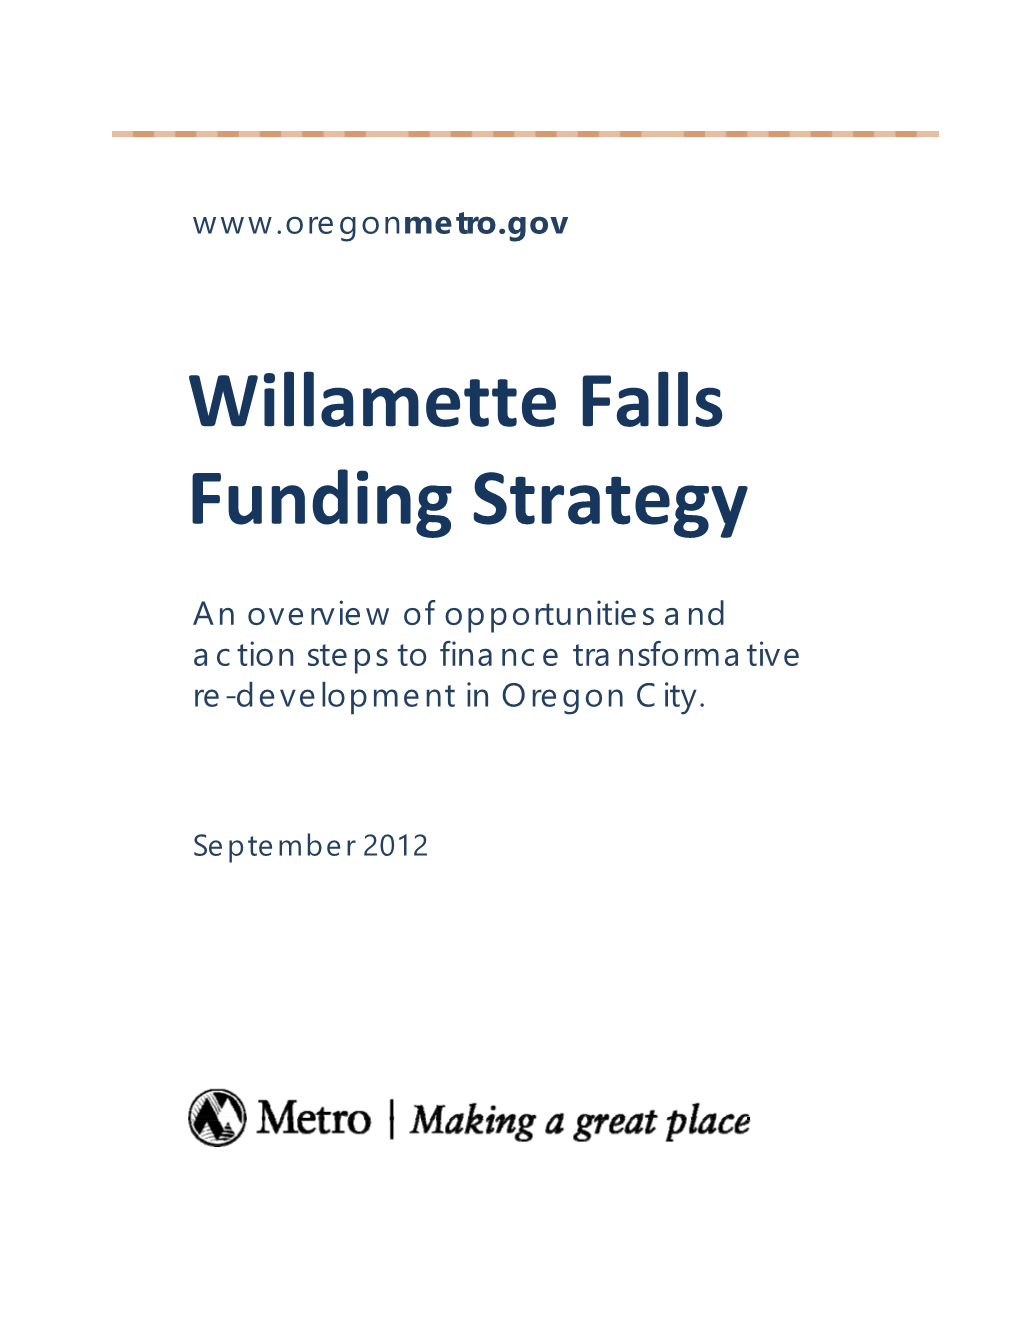 Willamette Falls Funding Strategy